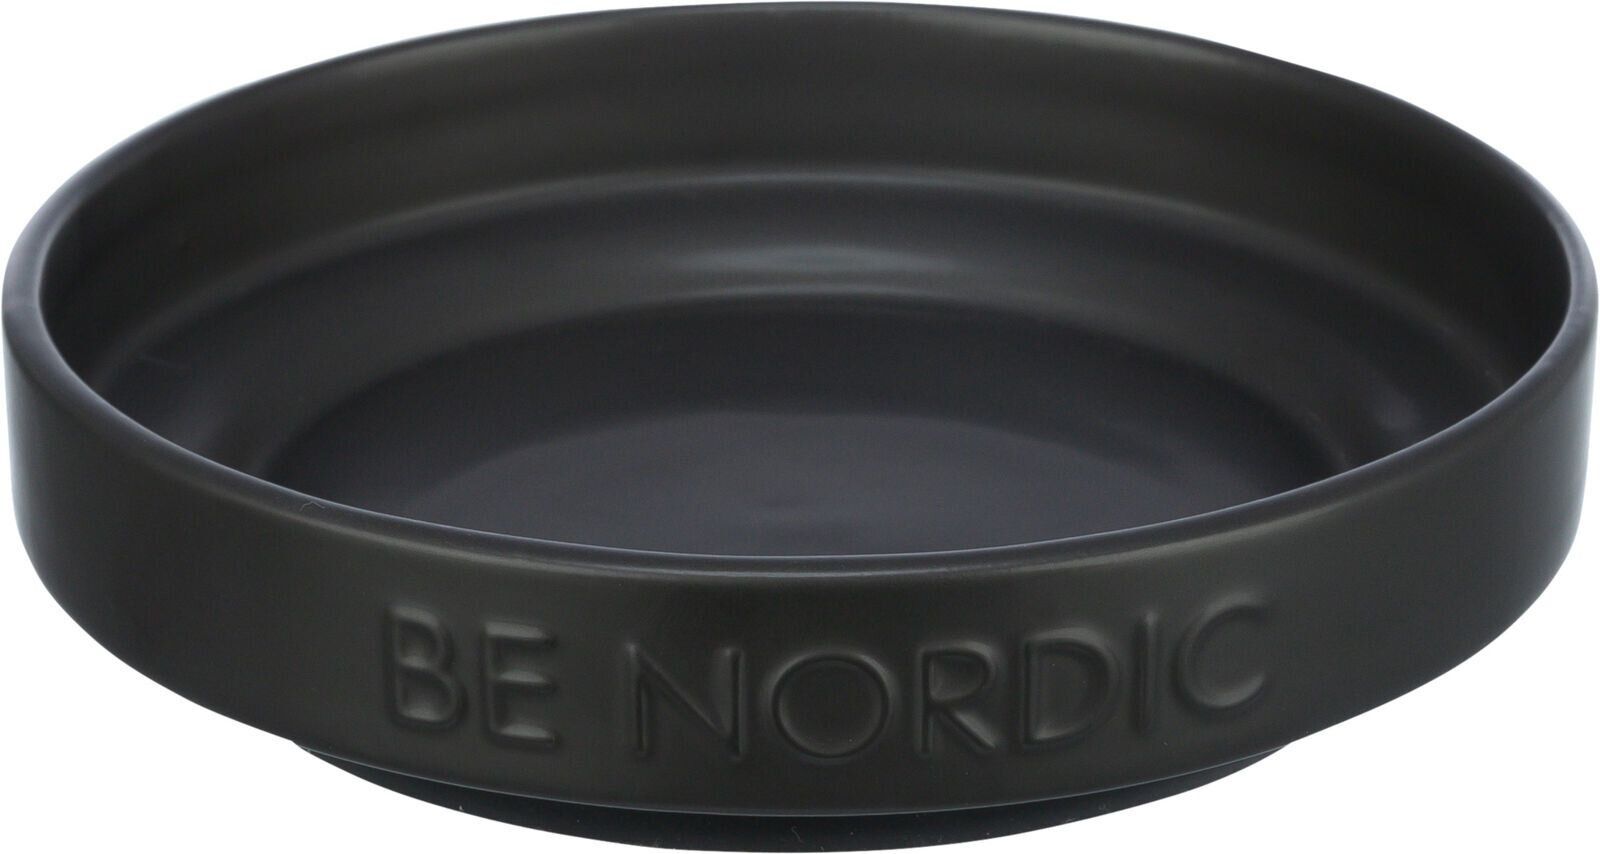 BE NORDIC keramická miska plytká, 0.3l / 16 cm, černá TRIXIE